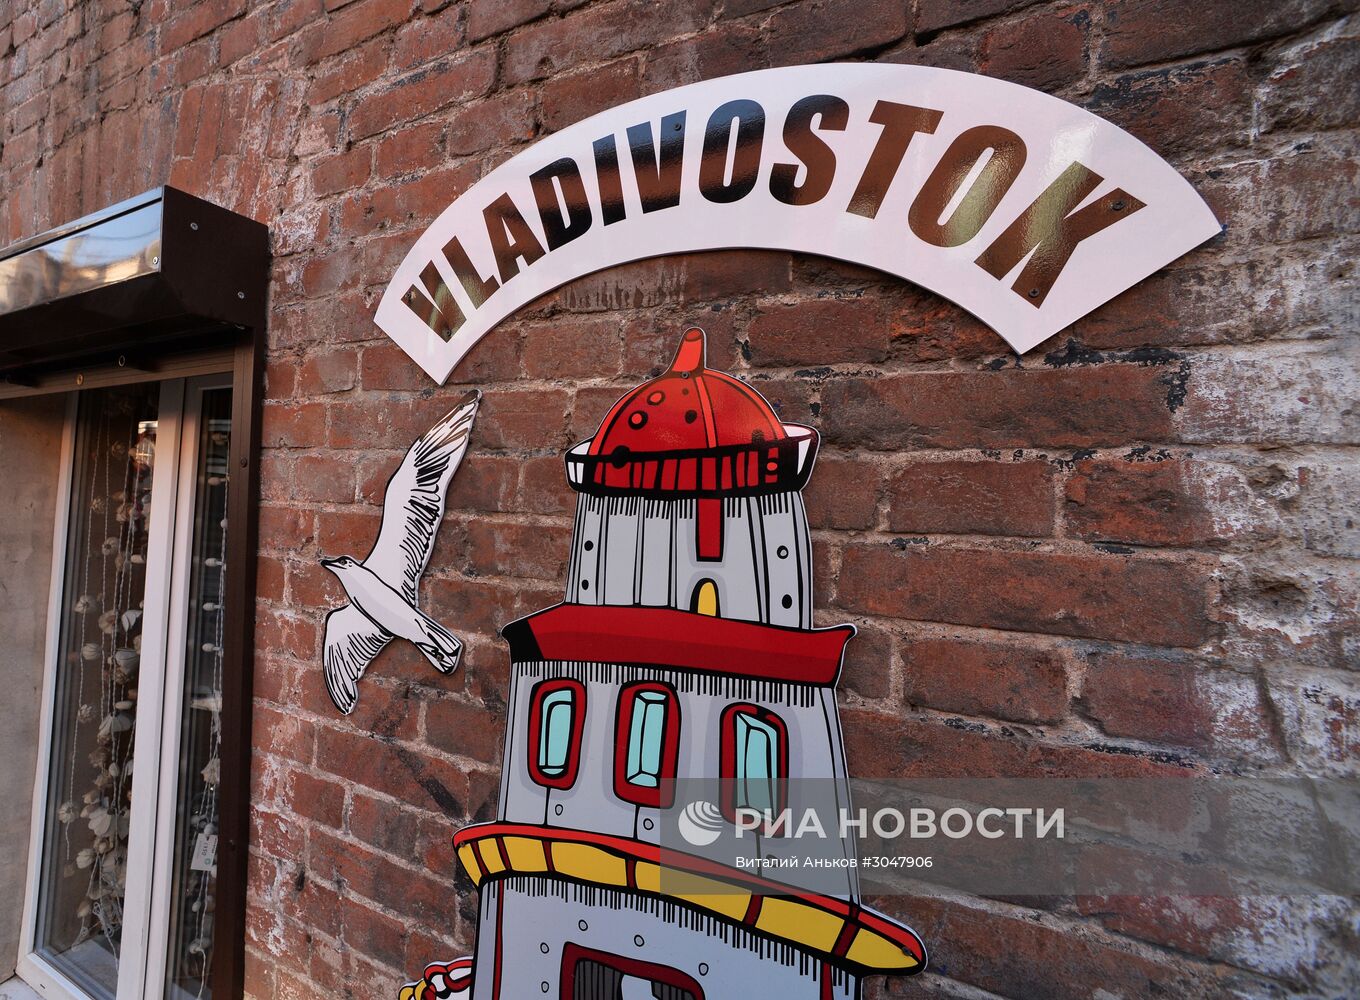 Старые кварталы в центре Владивостока